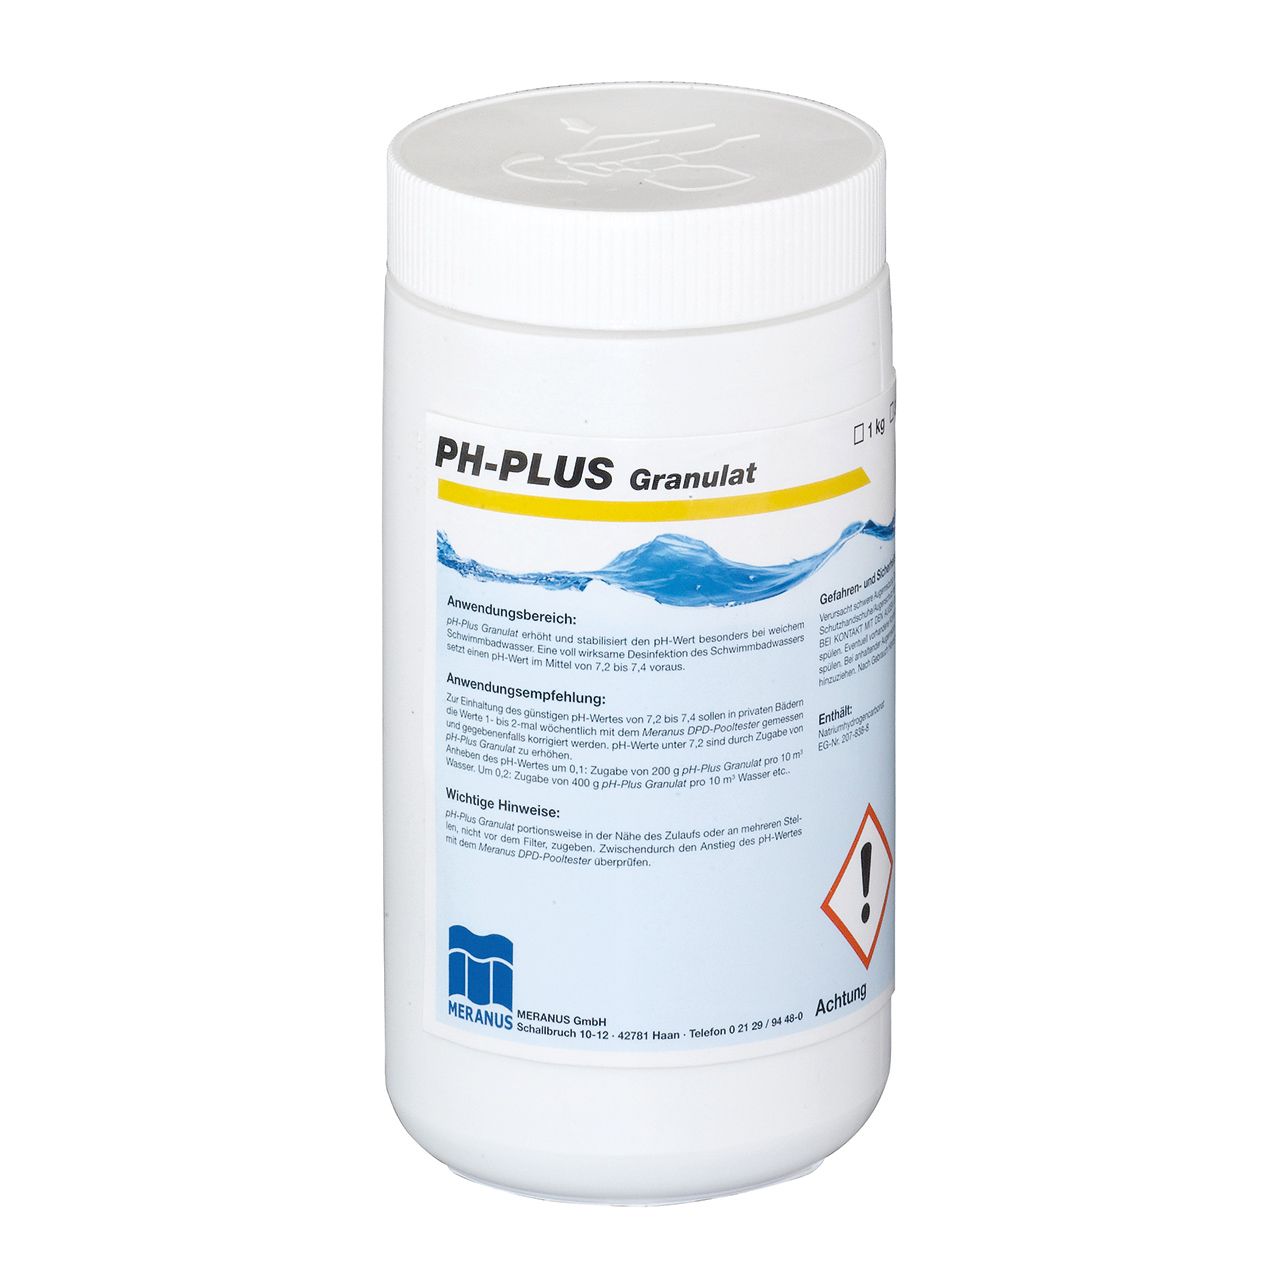 Meranus pH-Plus Granulat